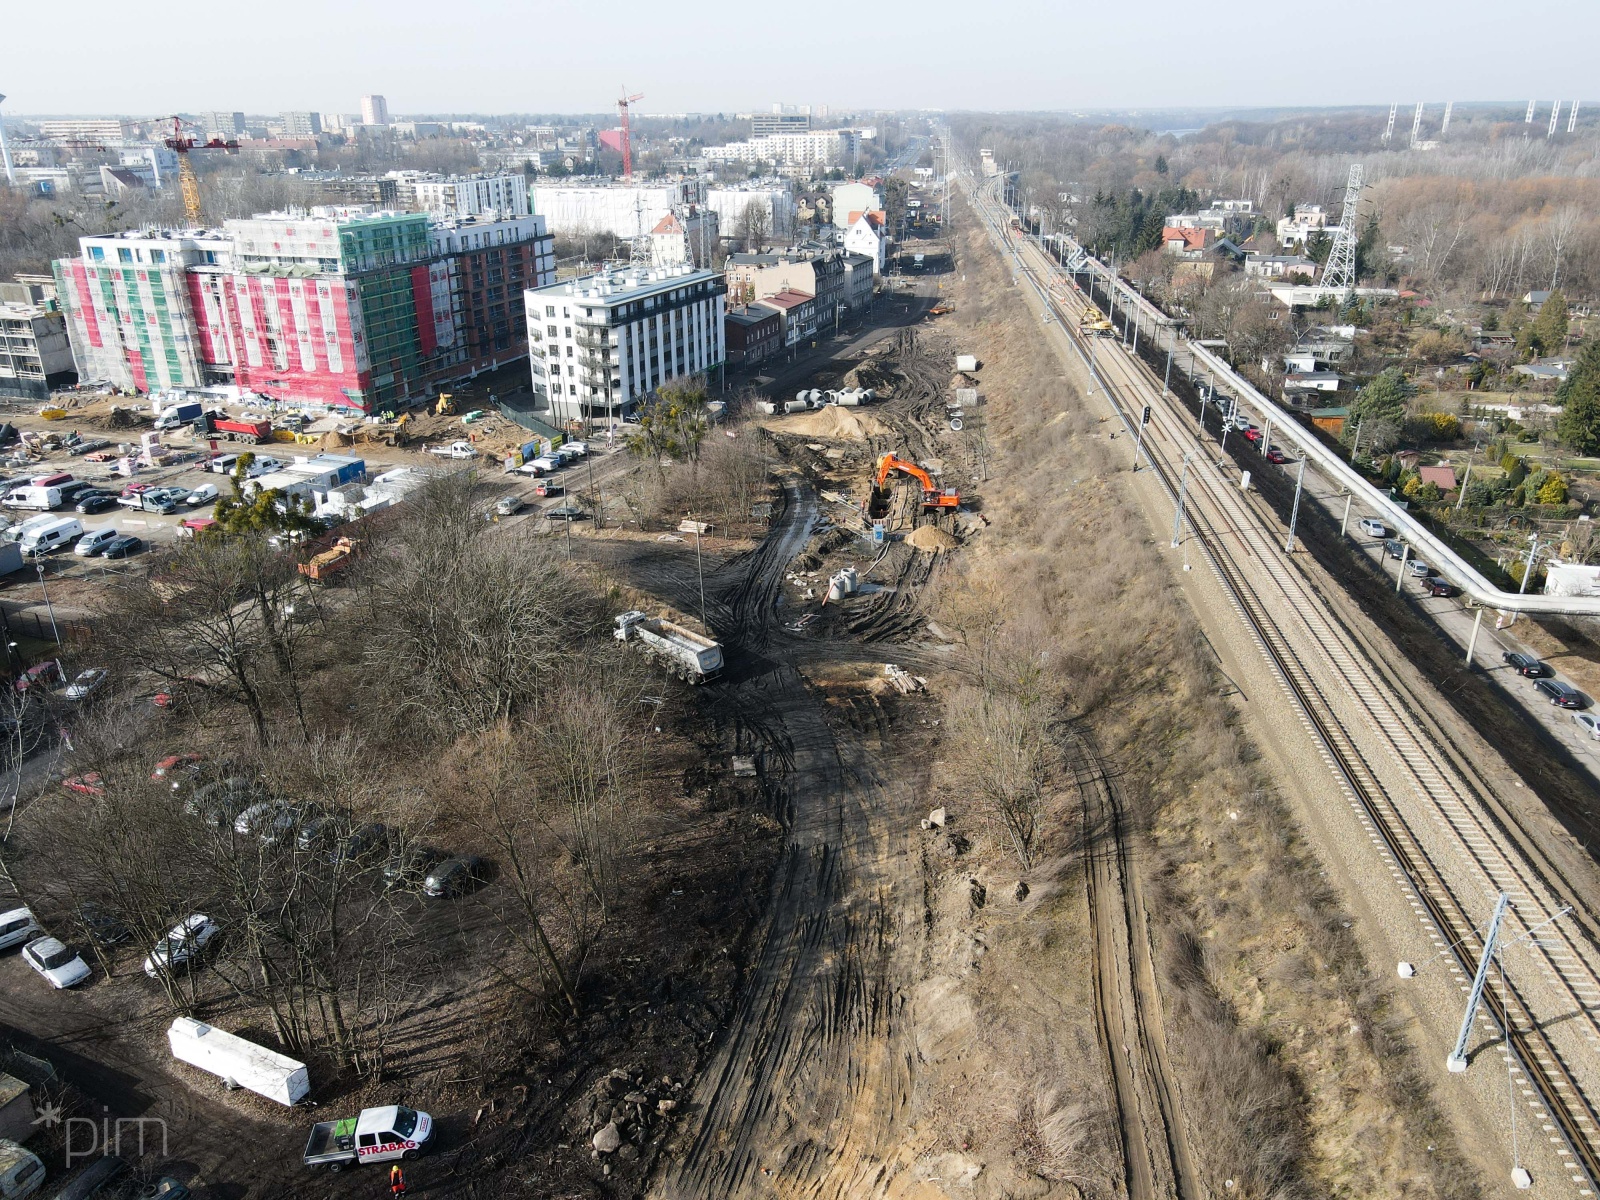 Widok z góry. Po prawej tory kolejowe, po lewej bloki i parkingi. Na dole plac budowy. - grafika artykułu